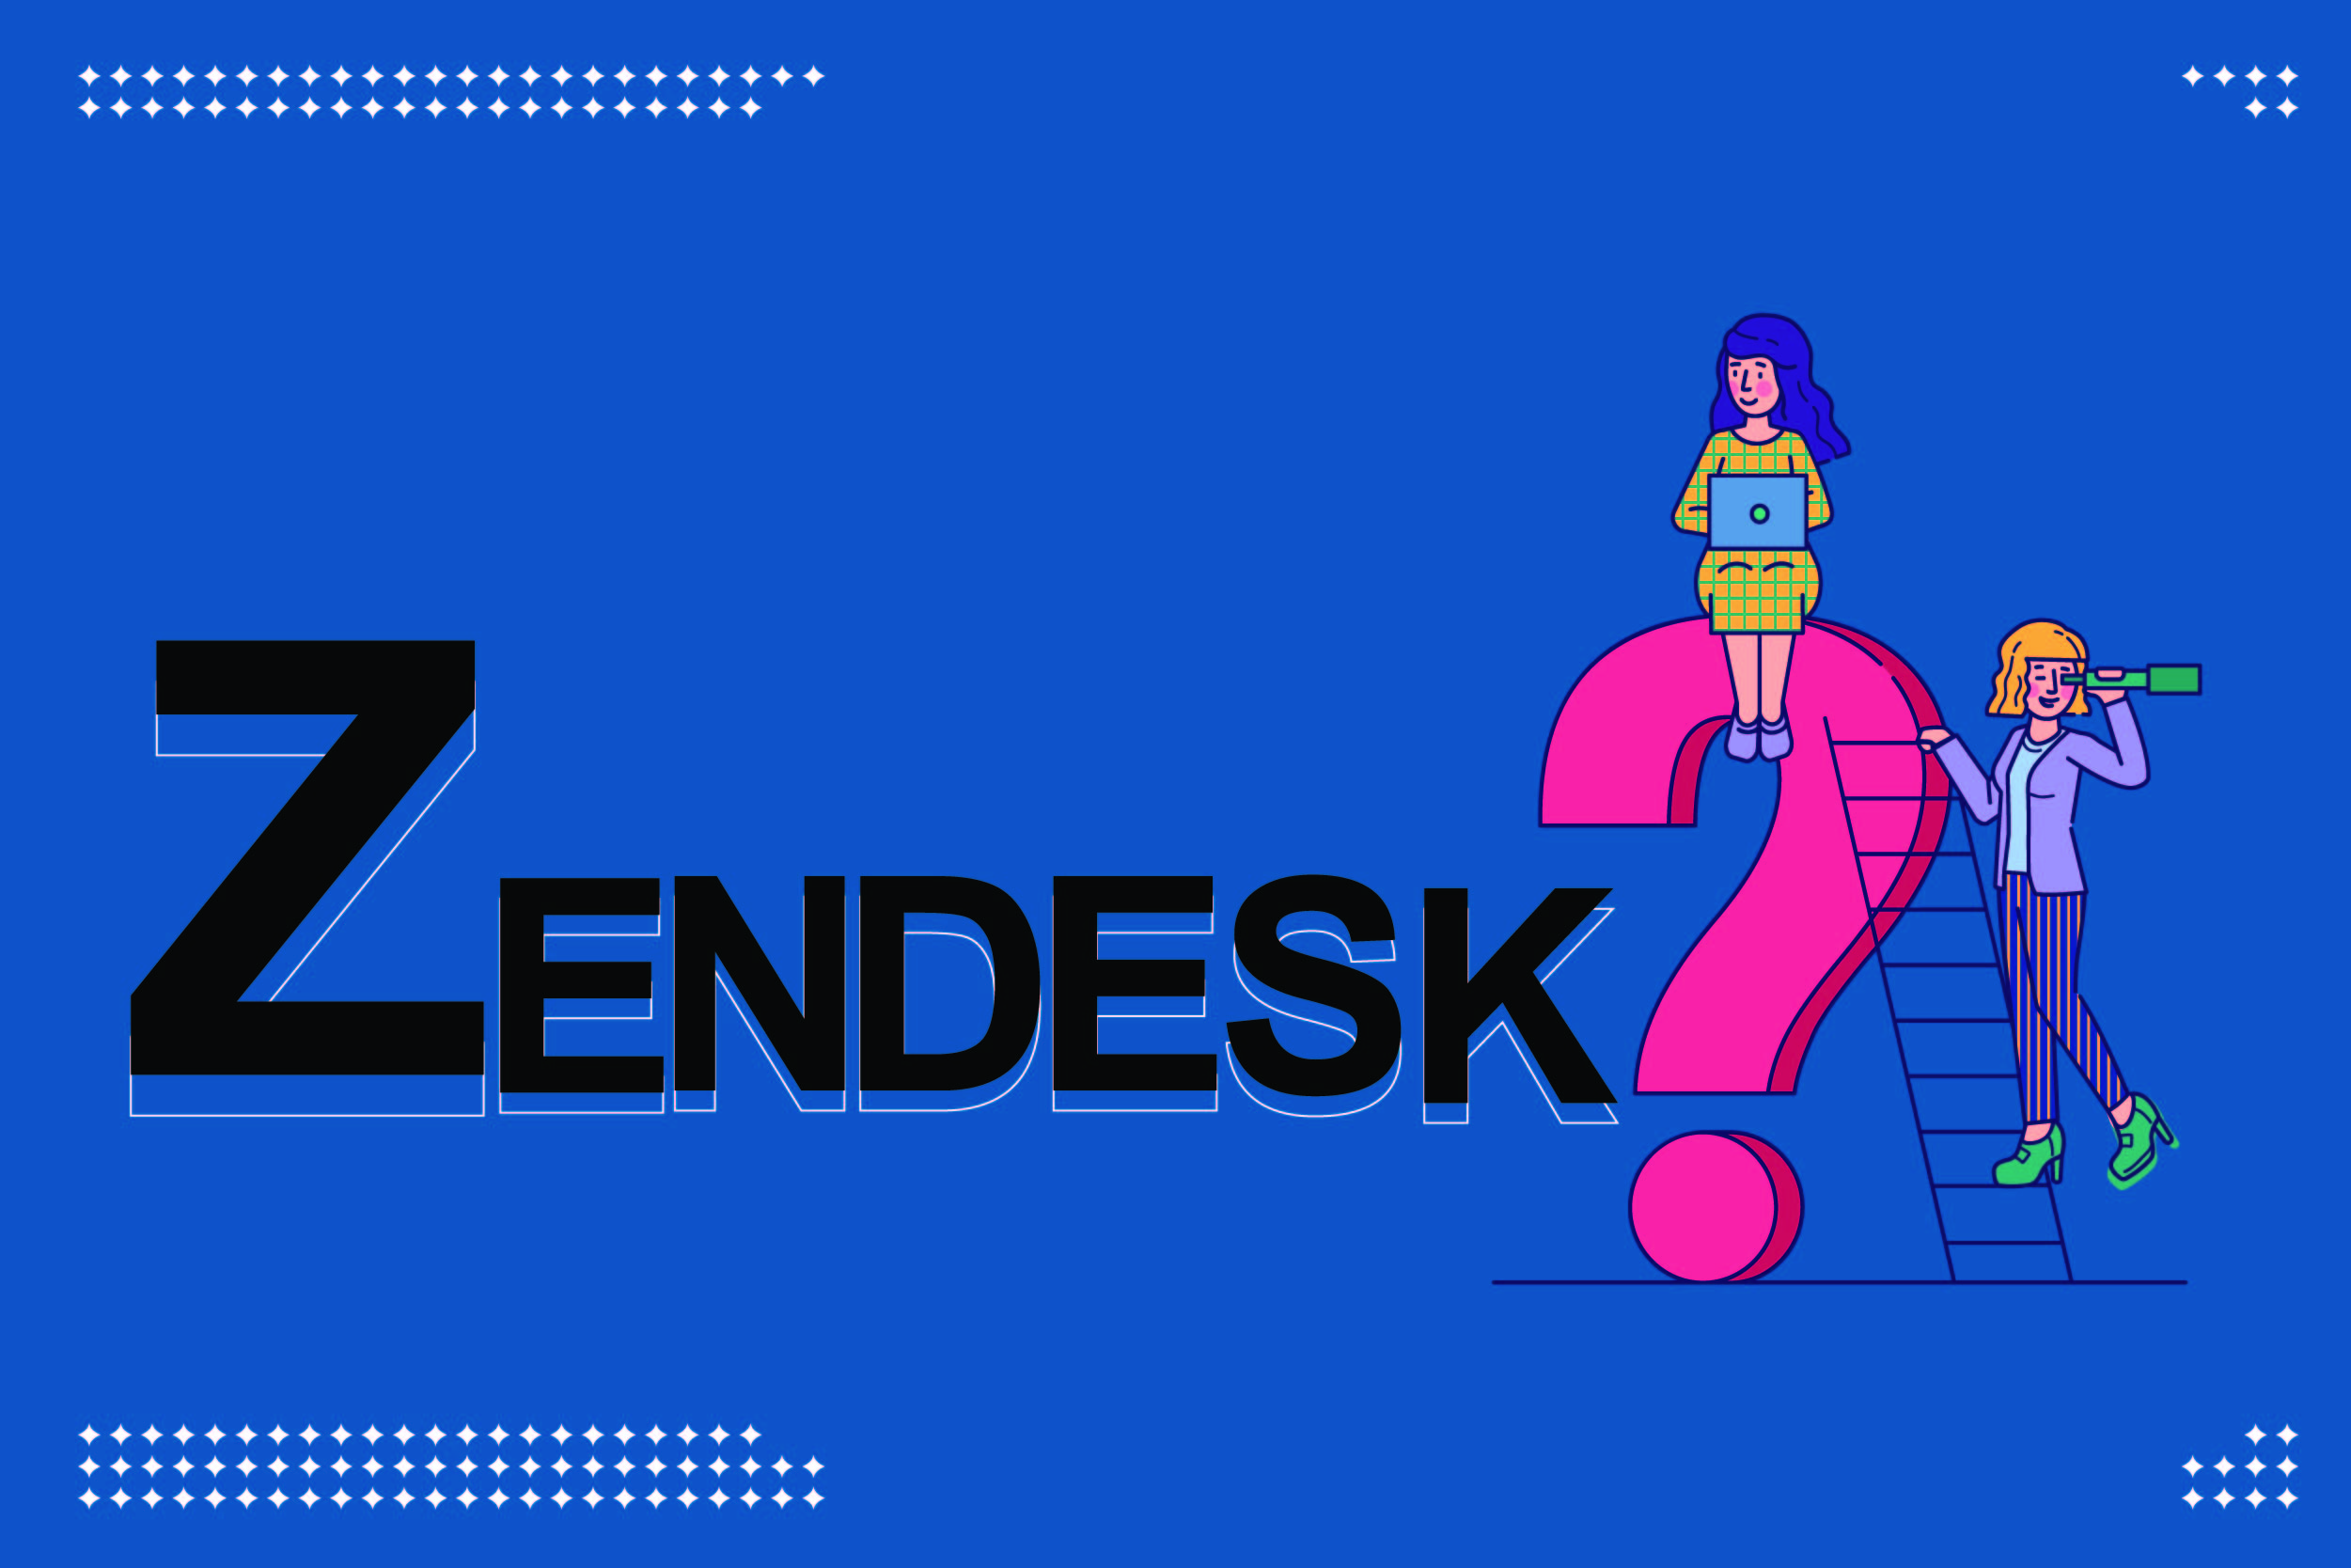 Zendesk เผยโควิด-19 ดันยอดใบสั่งงานและคำร้องขอของลูกค้าพุ่ง แนะธุรกิจไทยใช้ซอฟต์แวร์รับมือออเดอร์ที่พุ่งสูงขึ้น